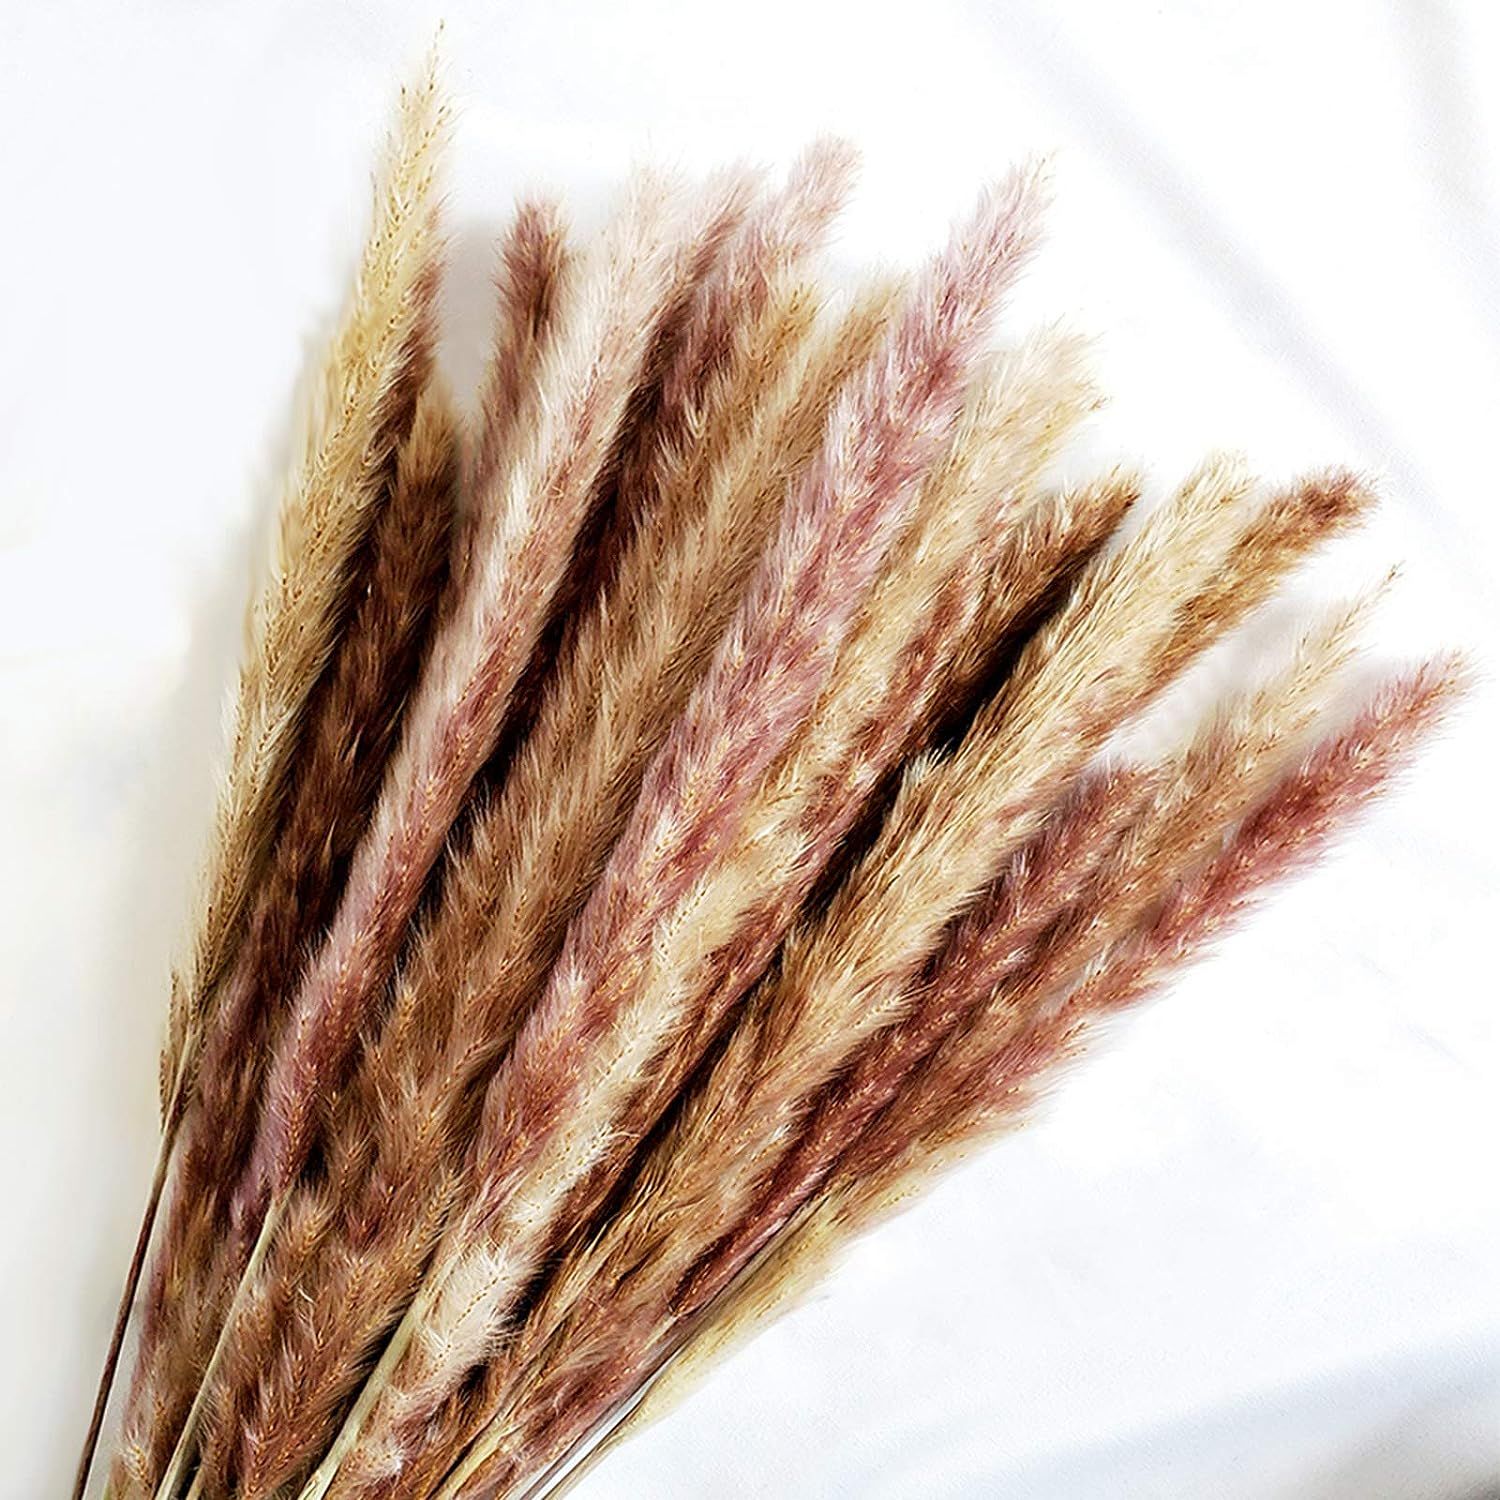 45cm Natural Dried Pampas Grass 30pcs for Flower Arrangements Home Decor | Amazon (US)